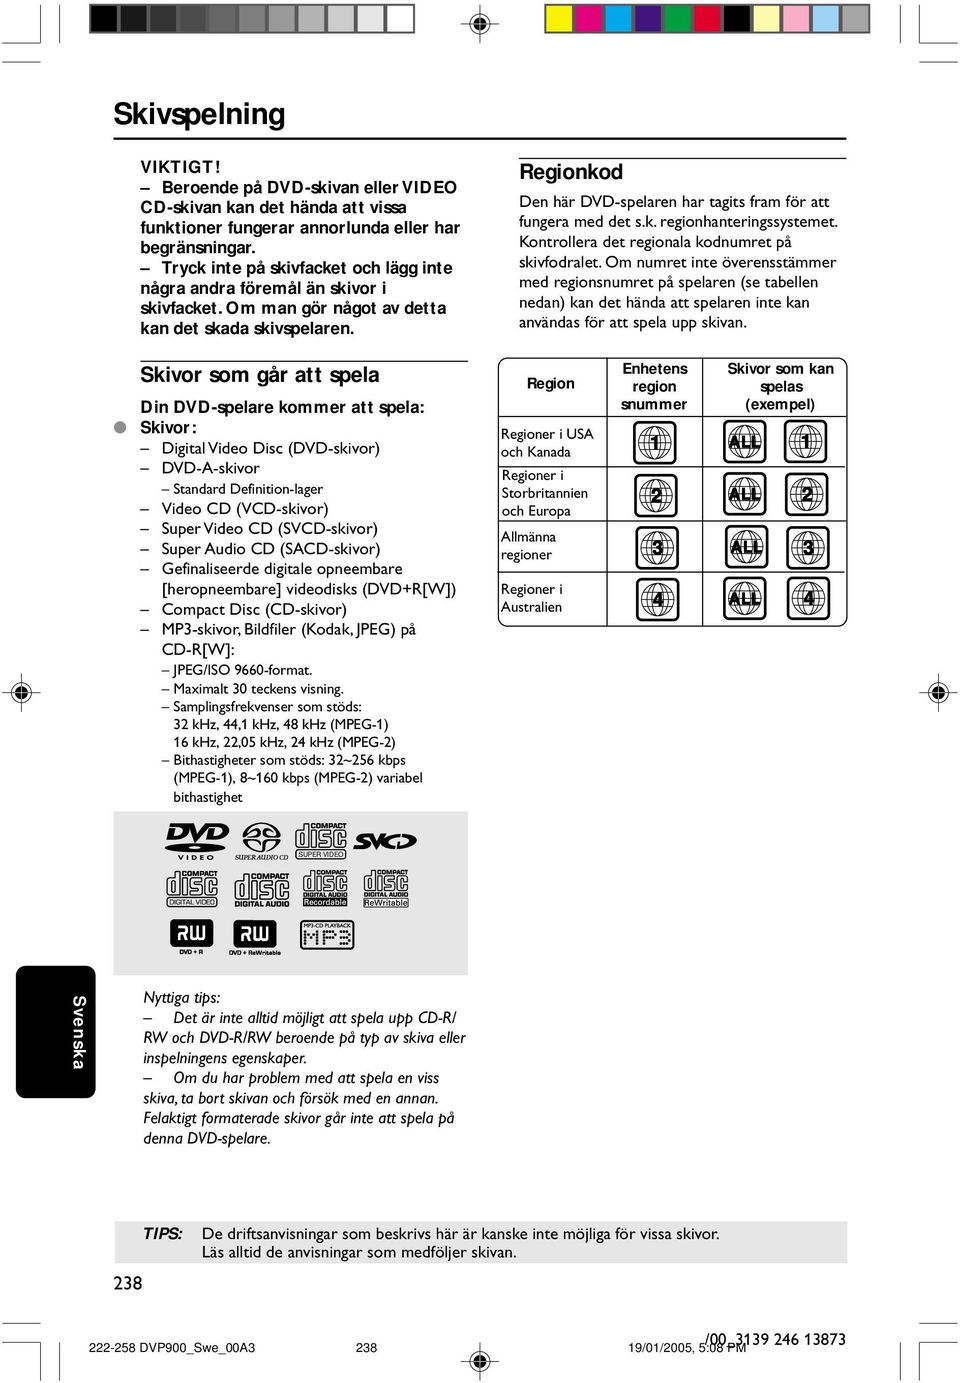 egionkod Den här DVD-spelaren har tagits fram för att fungera med det s.k. regionhanteringssystemet. Kontrollera det regionala kodnumret på skivfodralet.